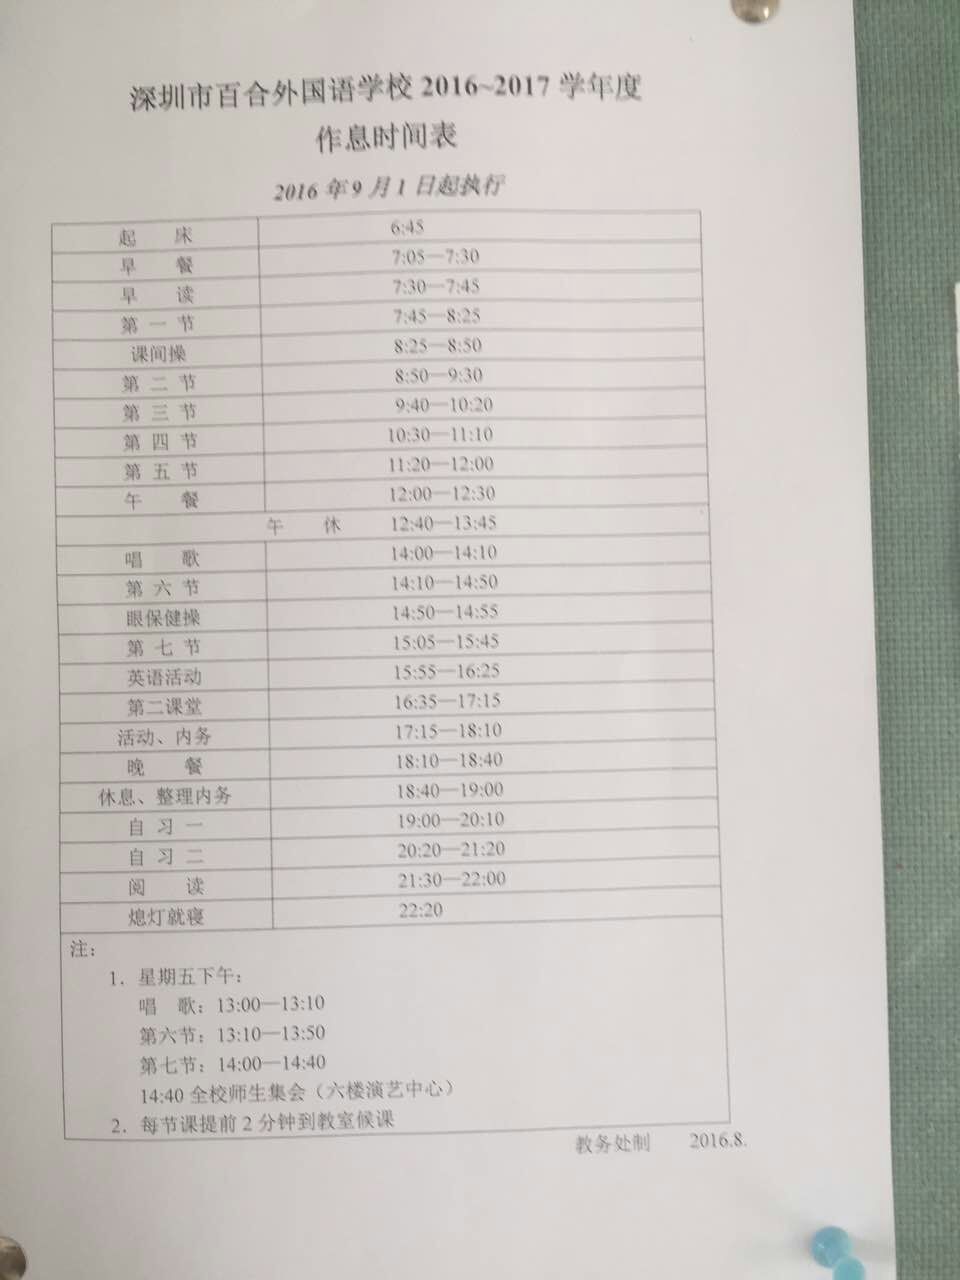 深圳市百合外国语学生作息时间表_深圳奥数网